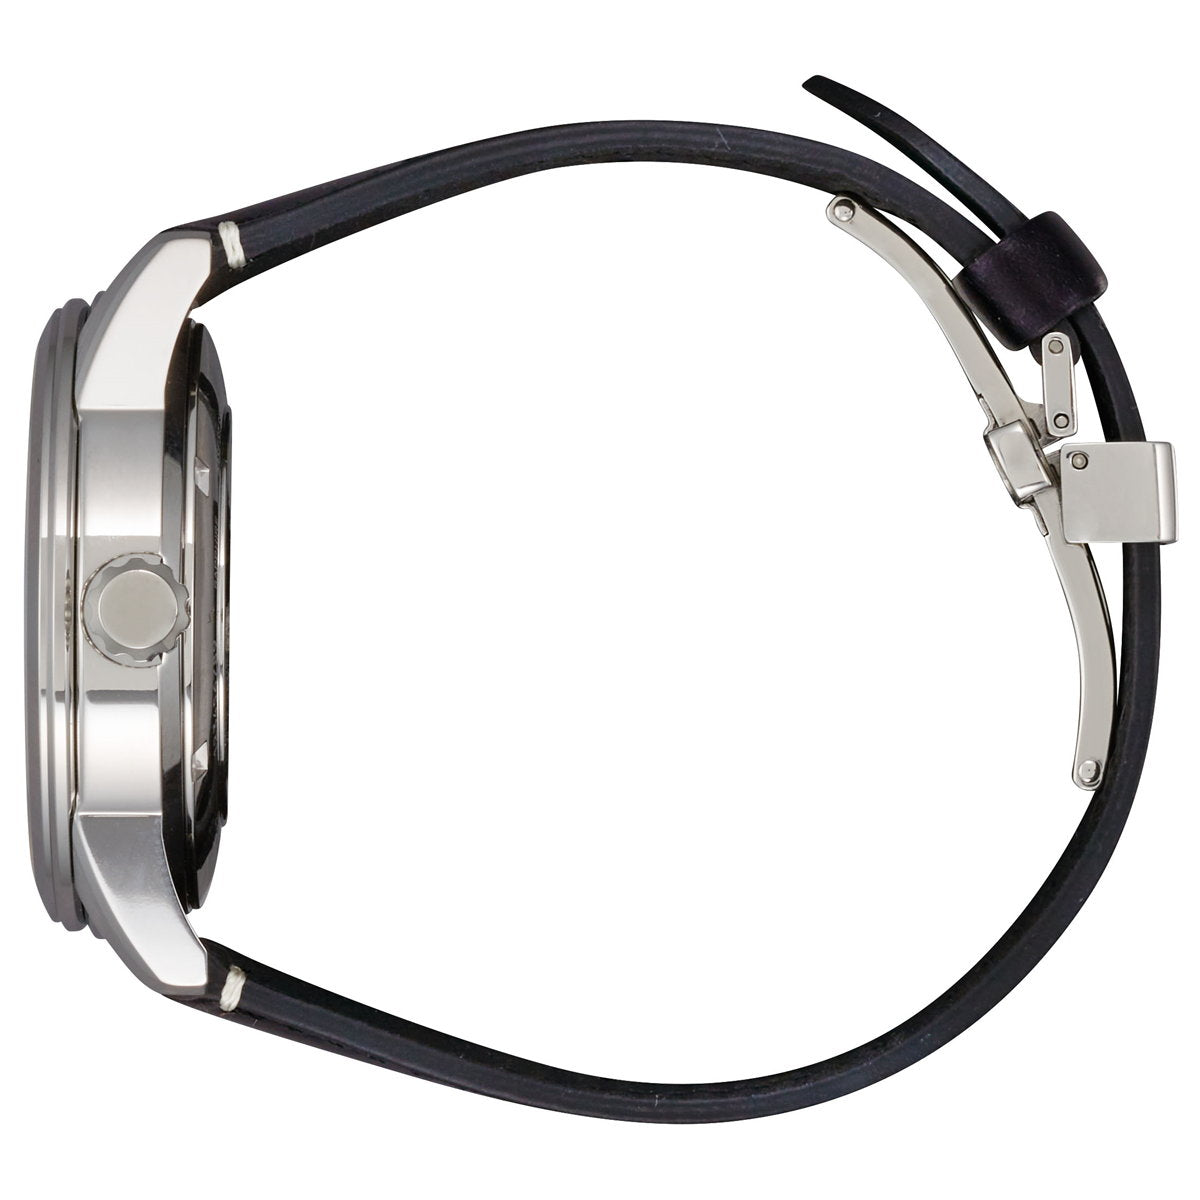 シチズンコレクション CITIZEN COLLECTION メカニカル 銀箔漆文字板 自動巻き 機械式 腕時計 メンズ NB3020-08A